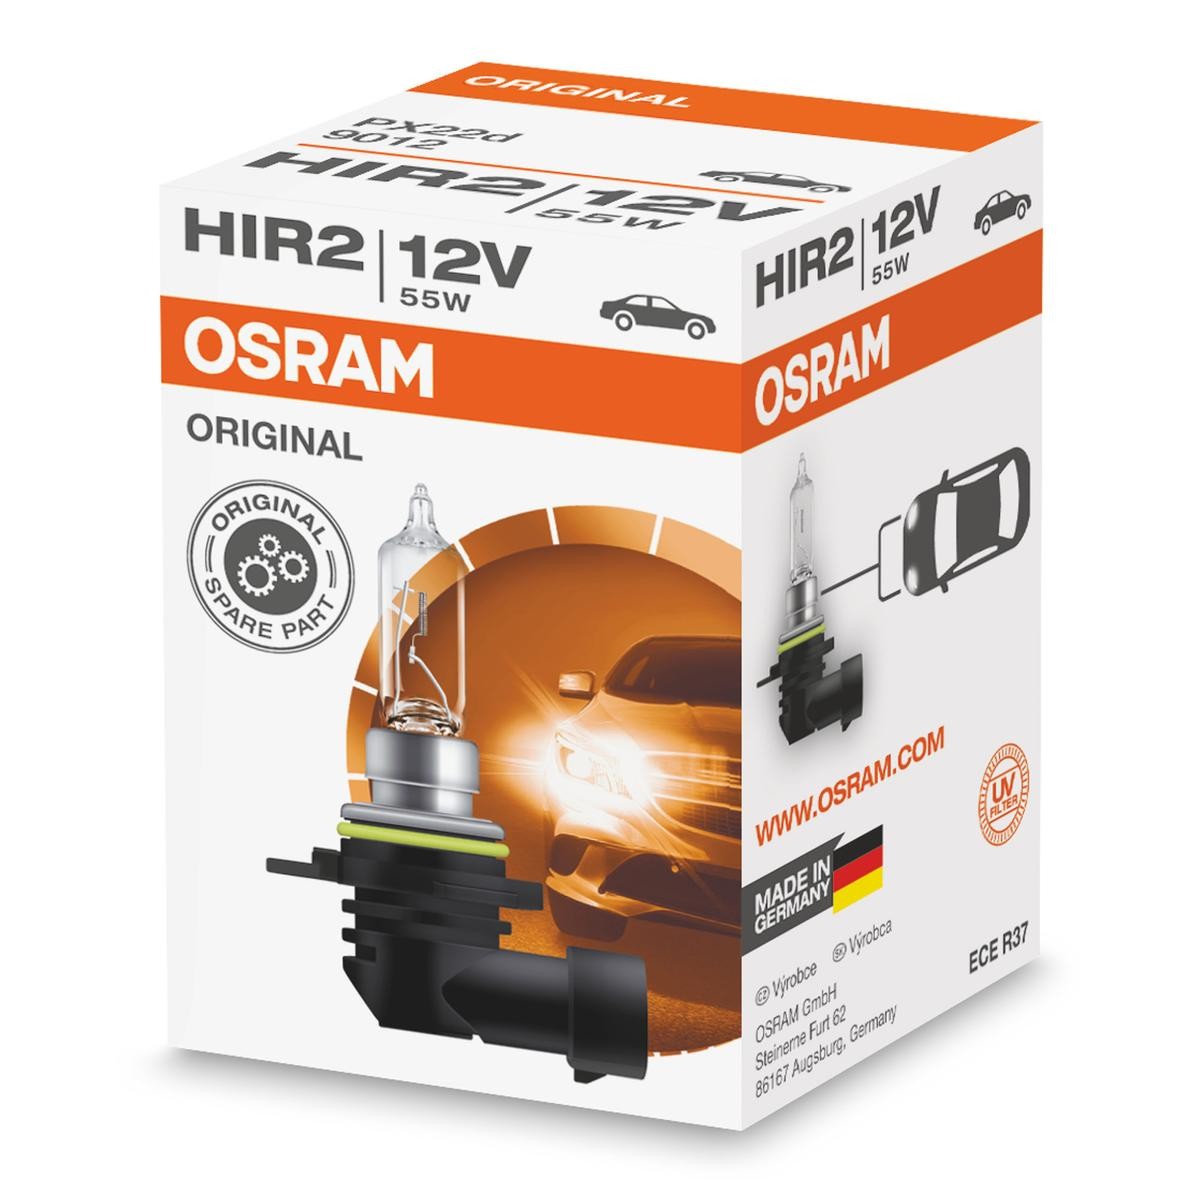 HIR2 OSRAM ORIGINAL LINE HIR2 12V 55W PX22d, 3200K, Halogen, ORIGINAL High beam bulb 9012 buy